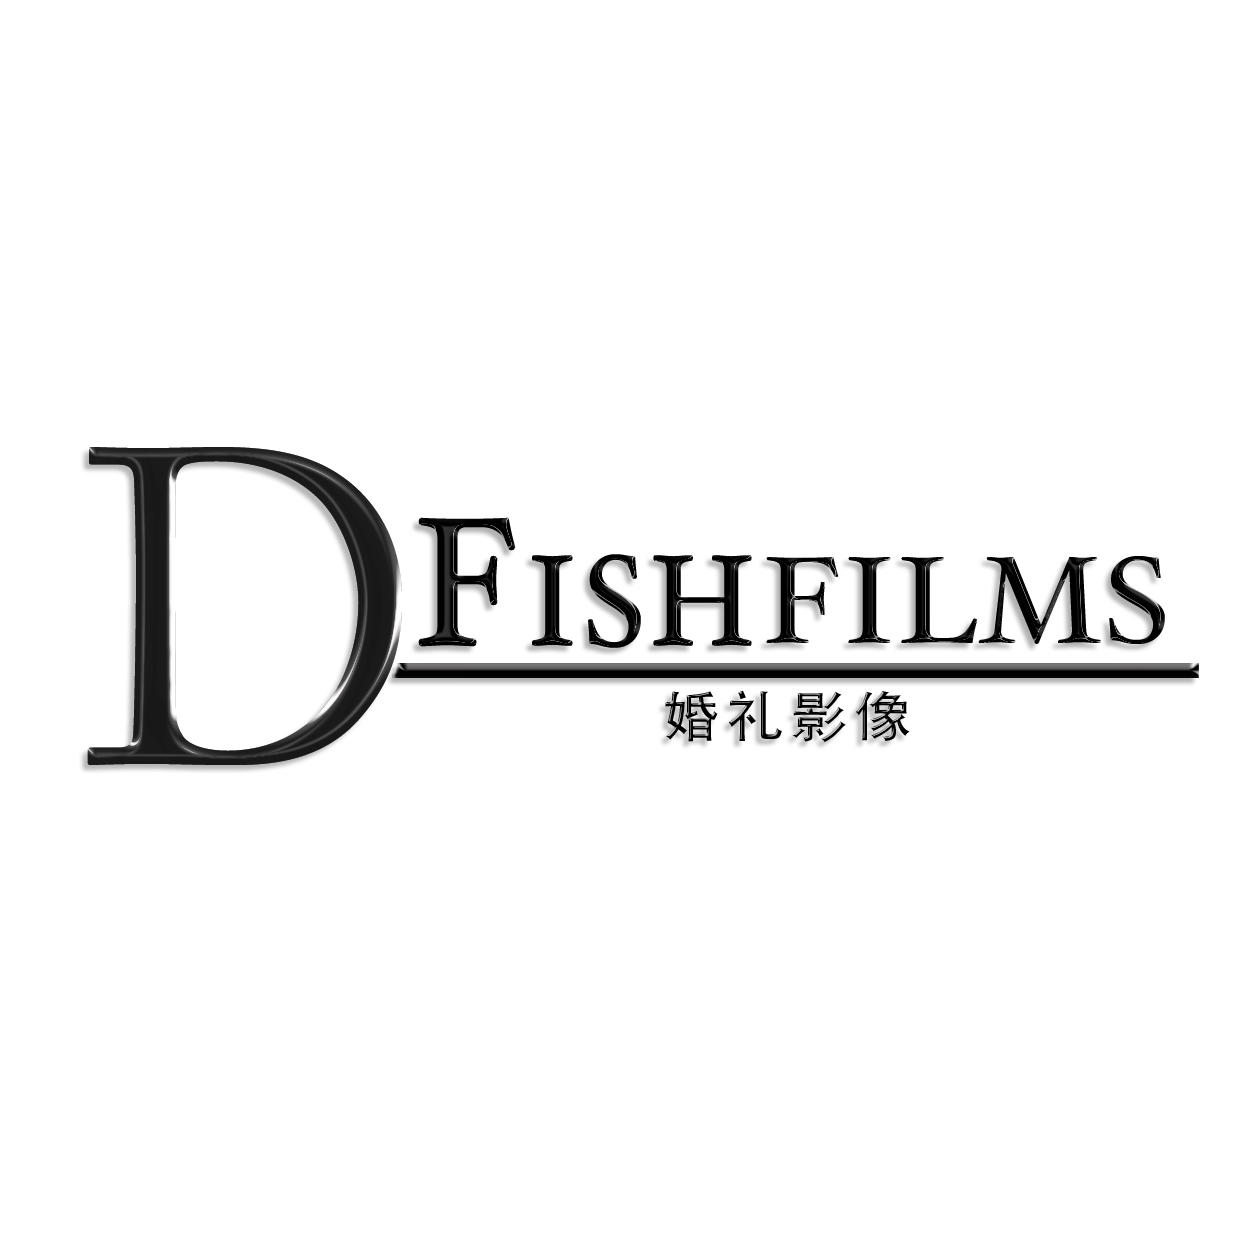 D-Fishfilms婚礼影像